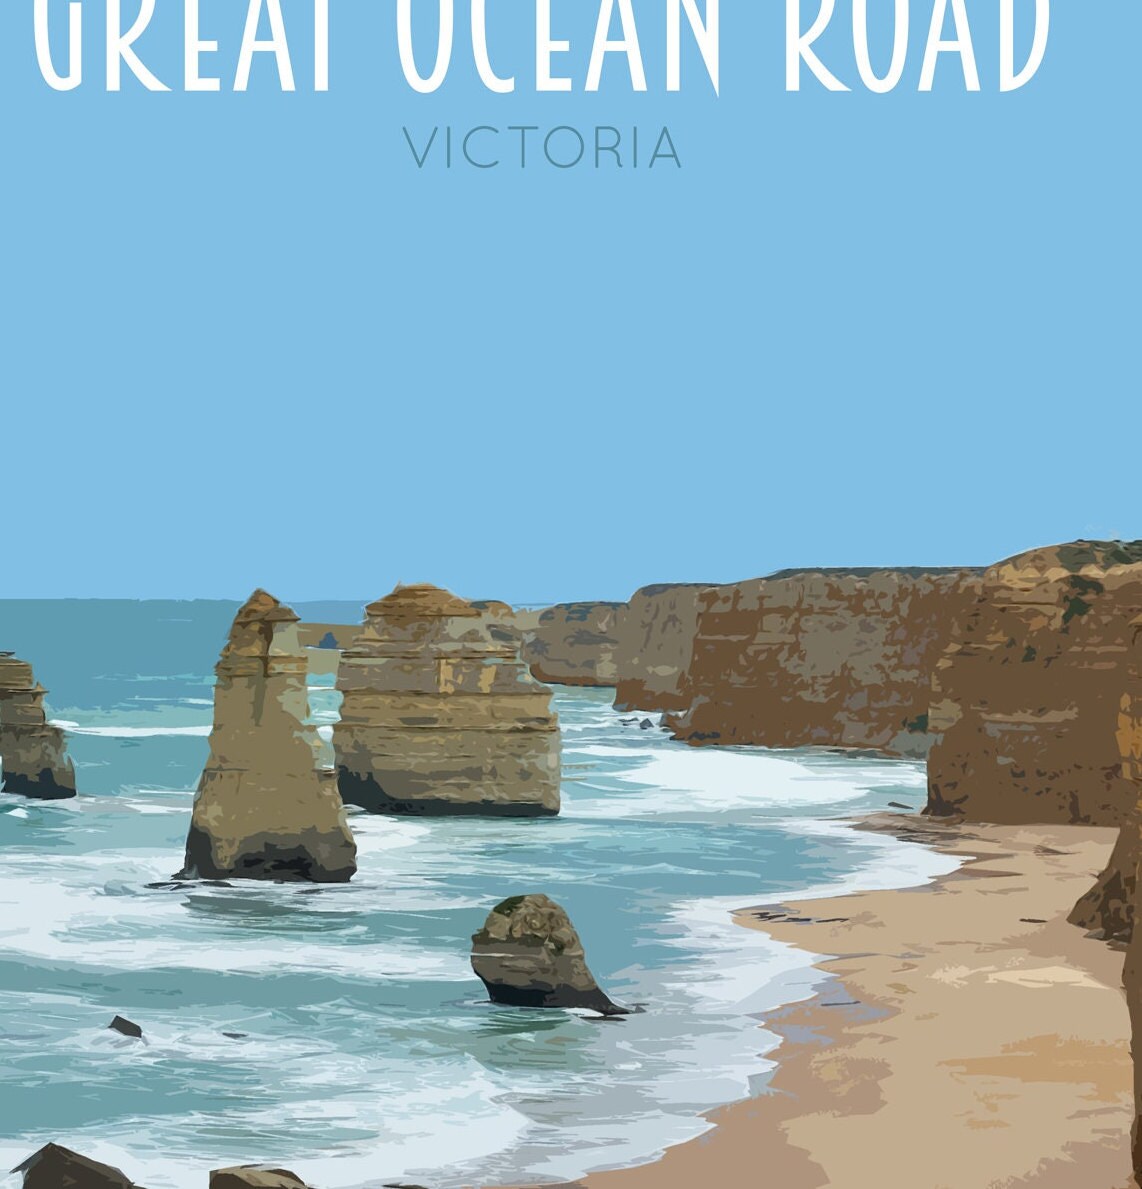 Great Ocean Road Travel Poster